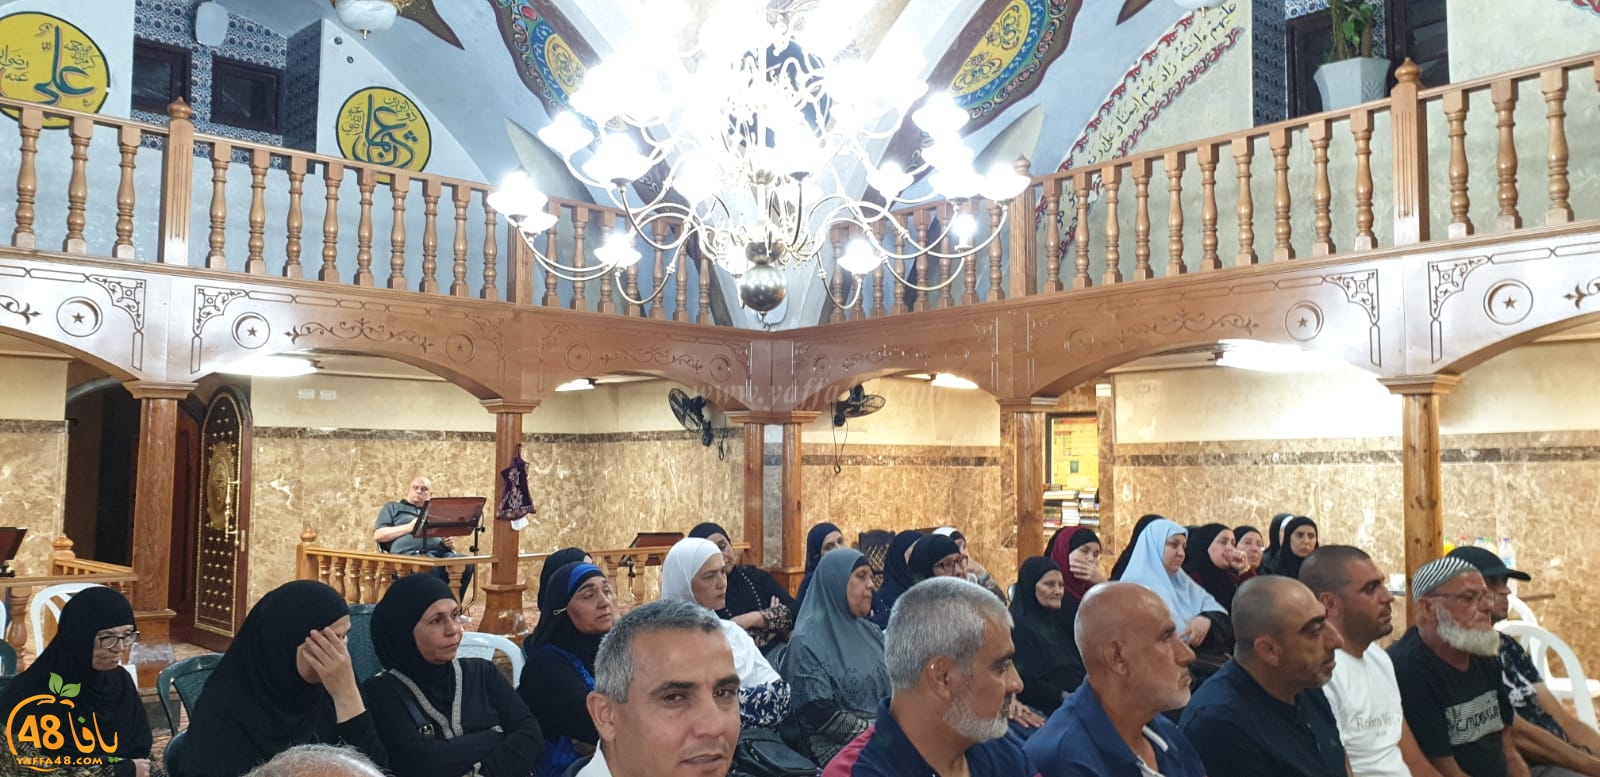 يافا: لجنة تيسير الحج والعمرة تُنظم الدرس الأخير لحجاج بيت الله الحرام 